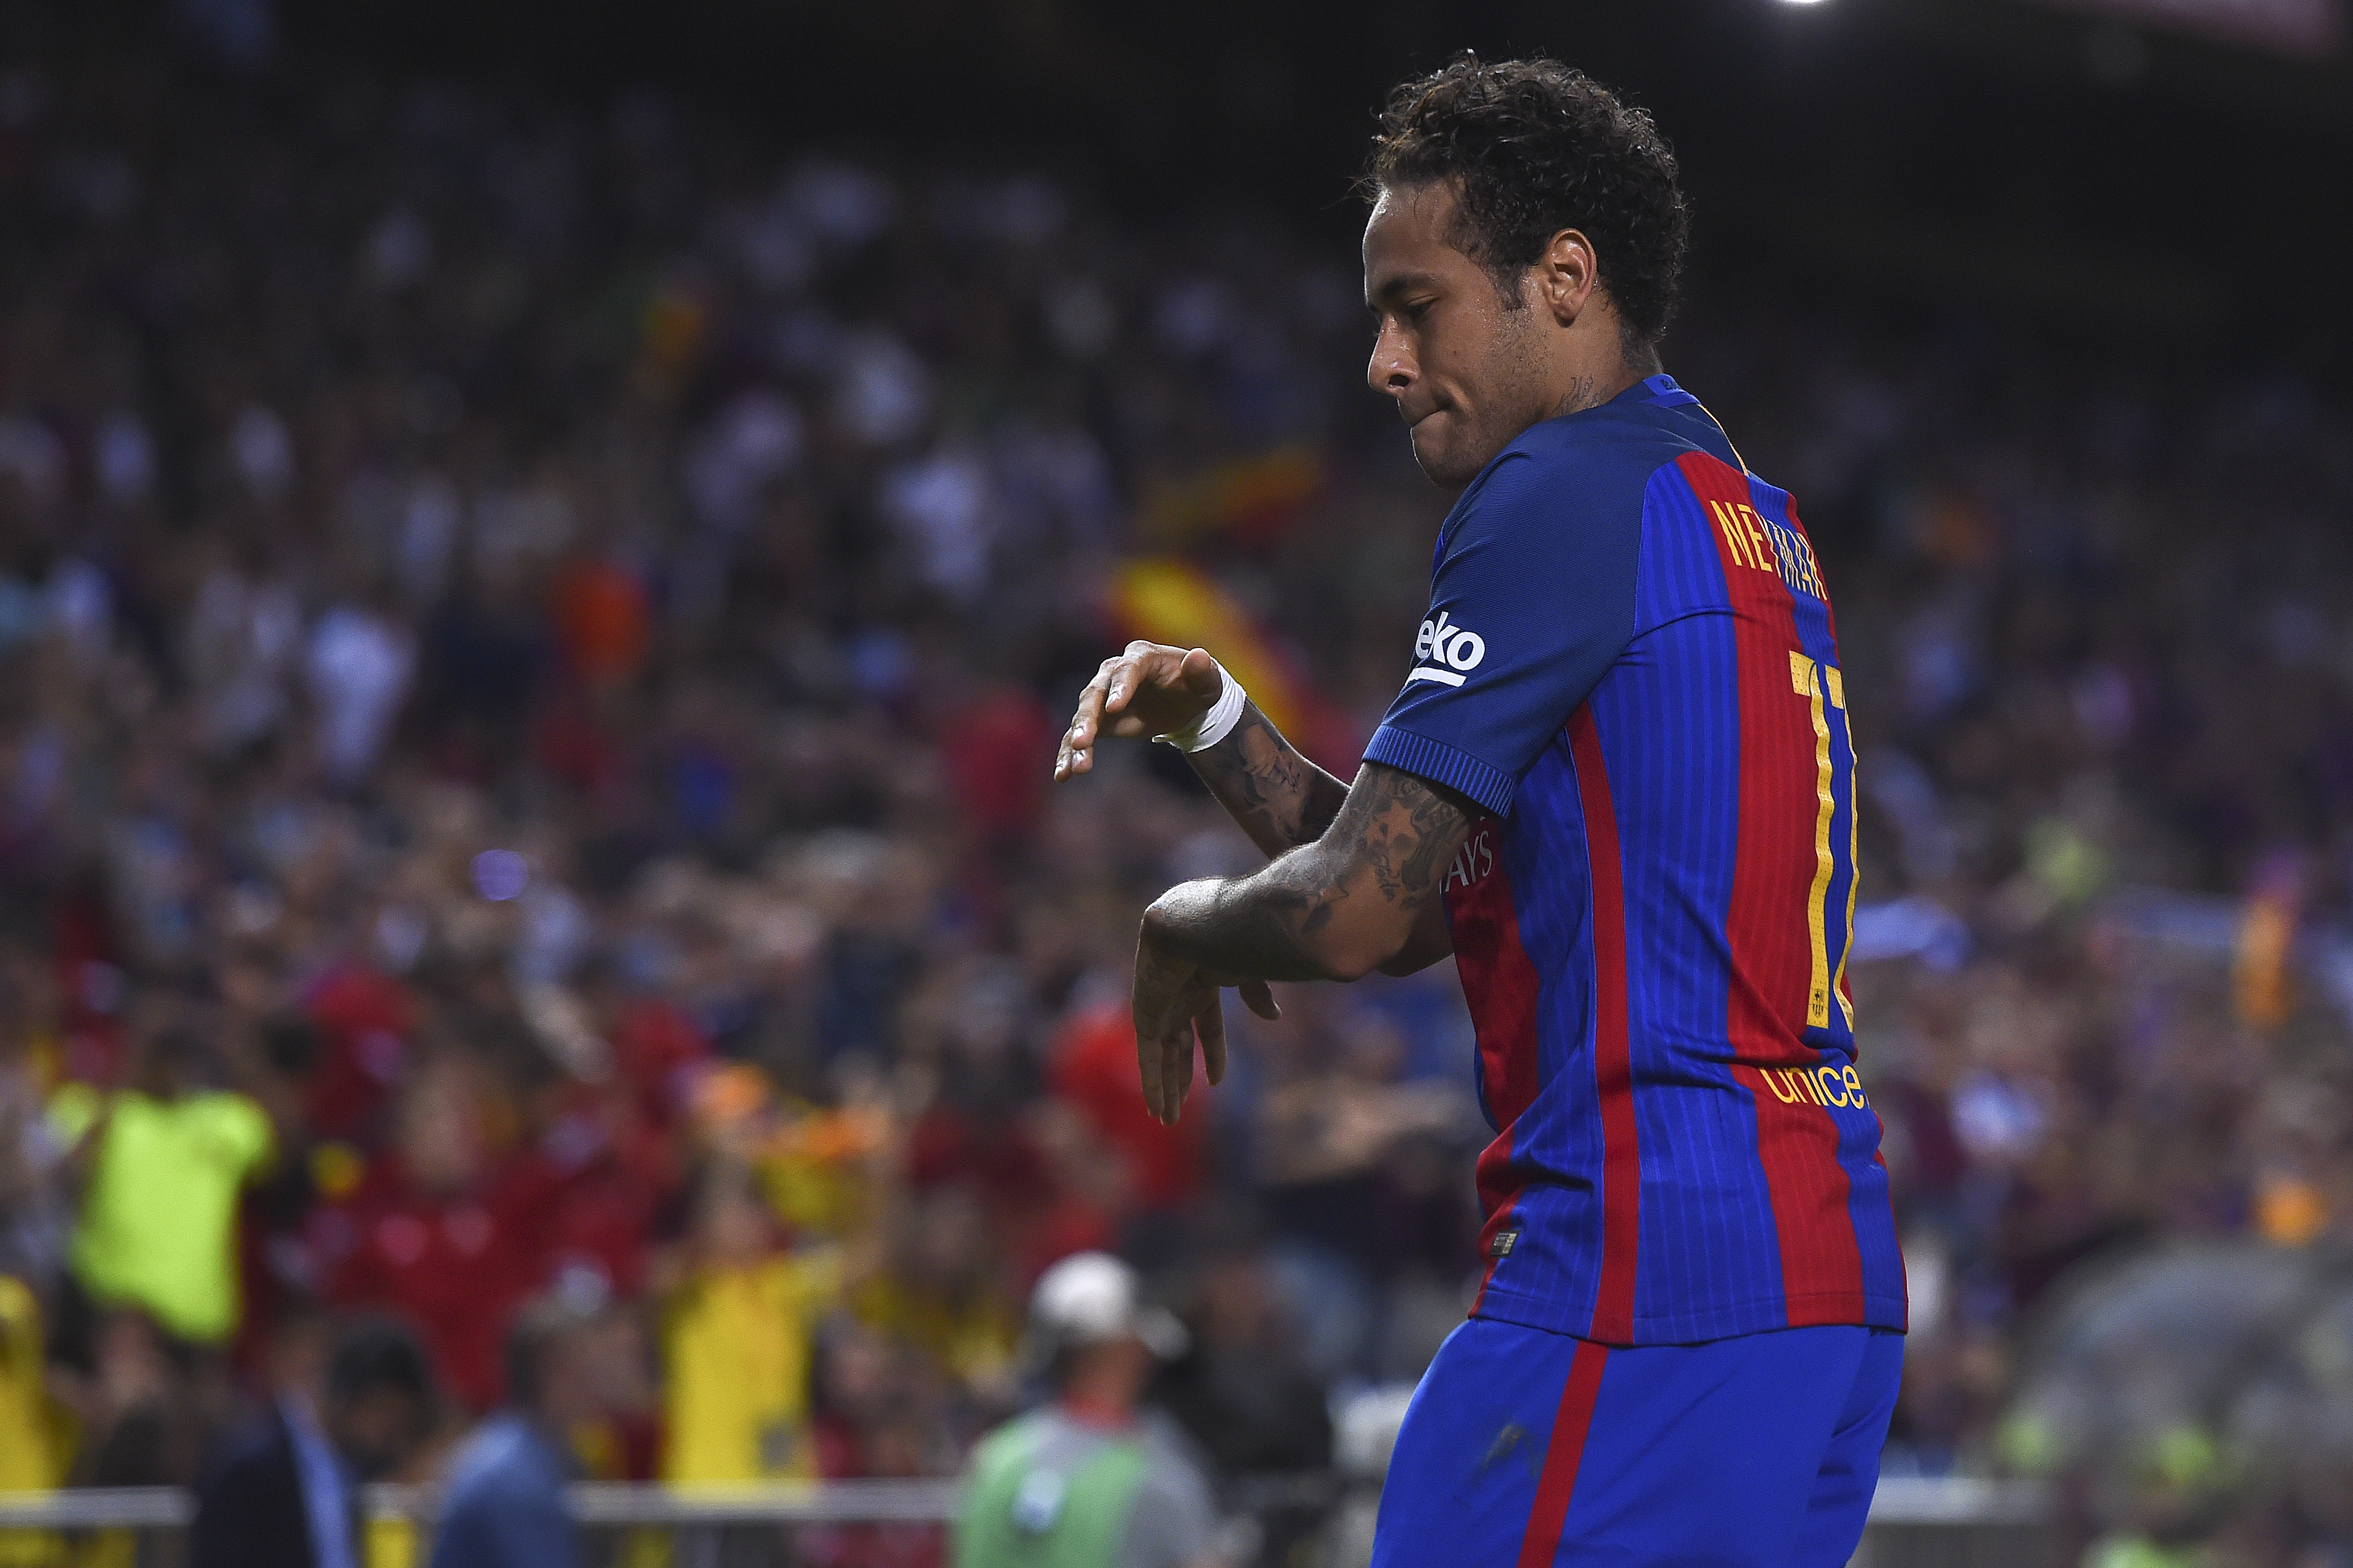 Neymar e o seu provável posicionamento tático no PSG |Esportes O POVO3971 x 2647